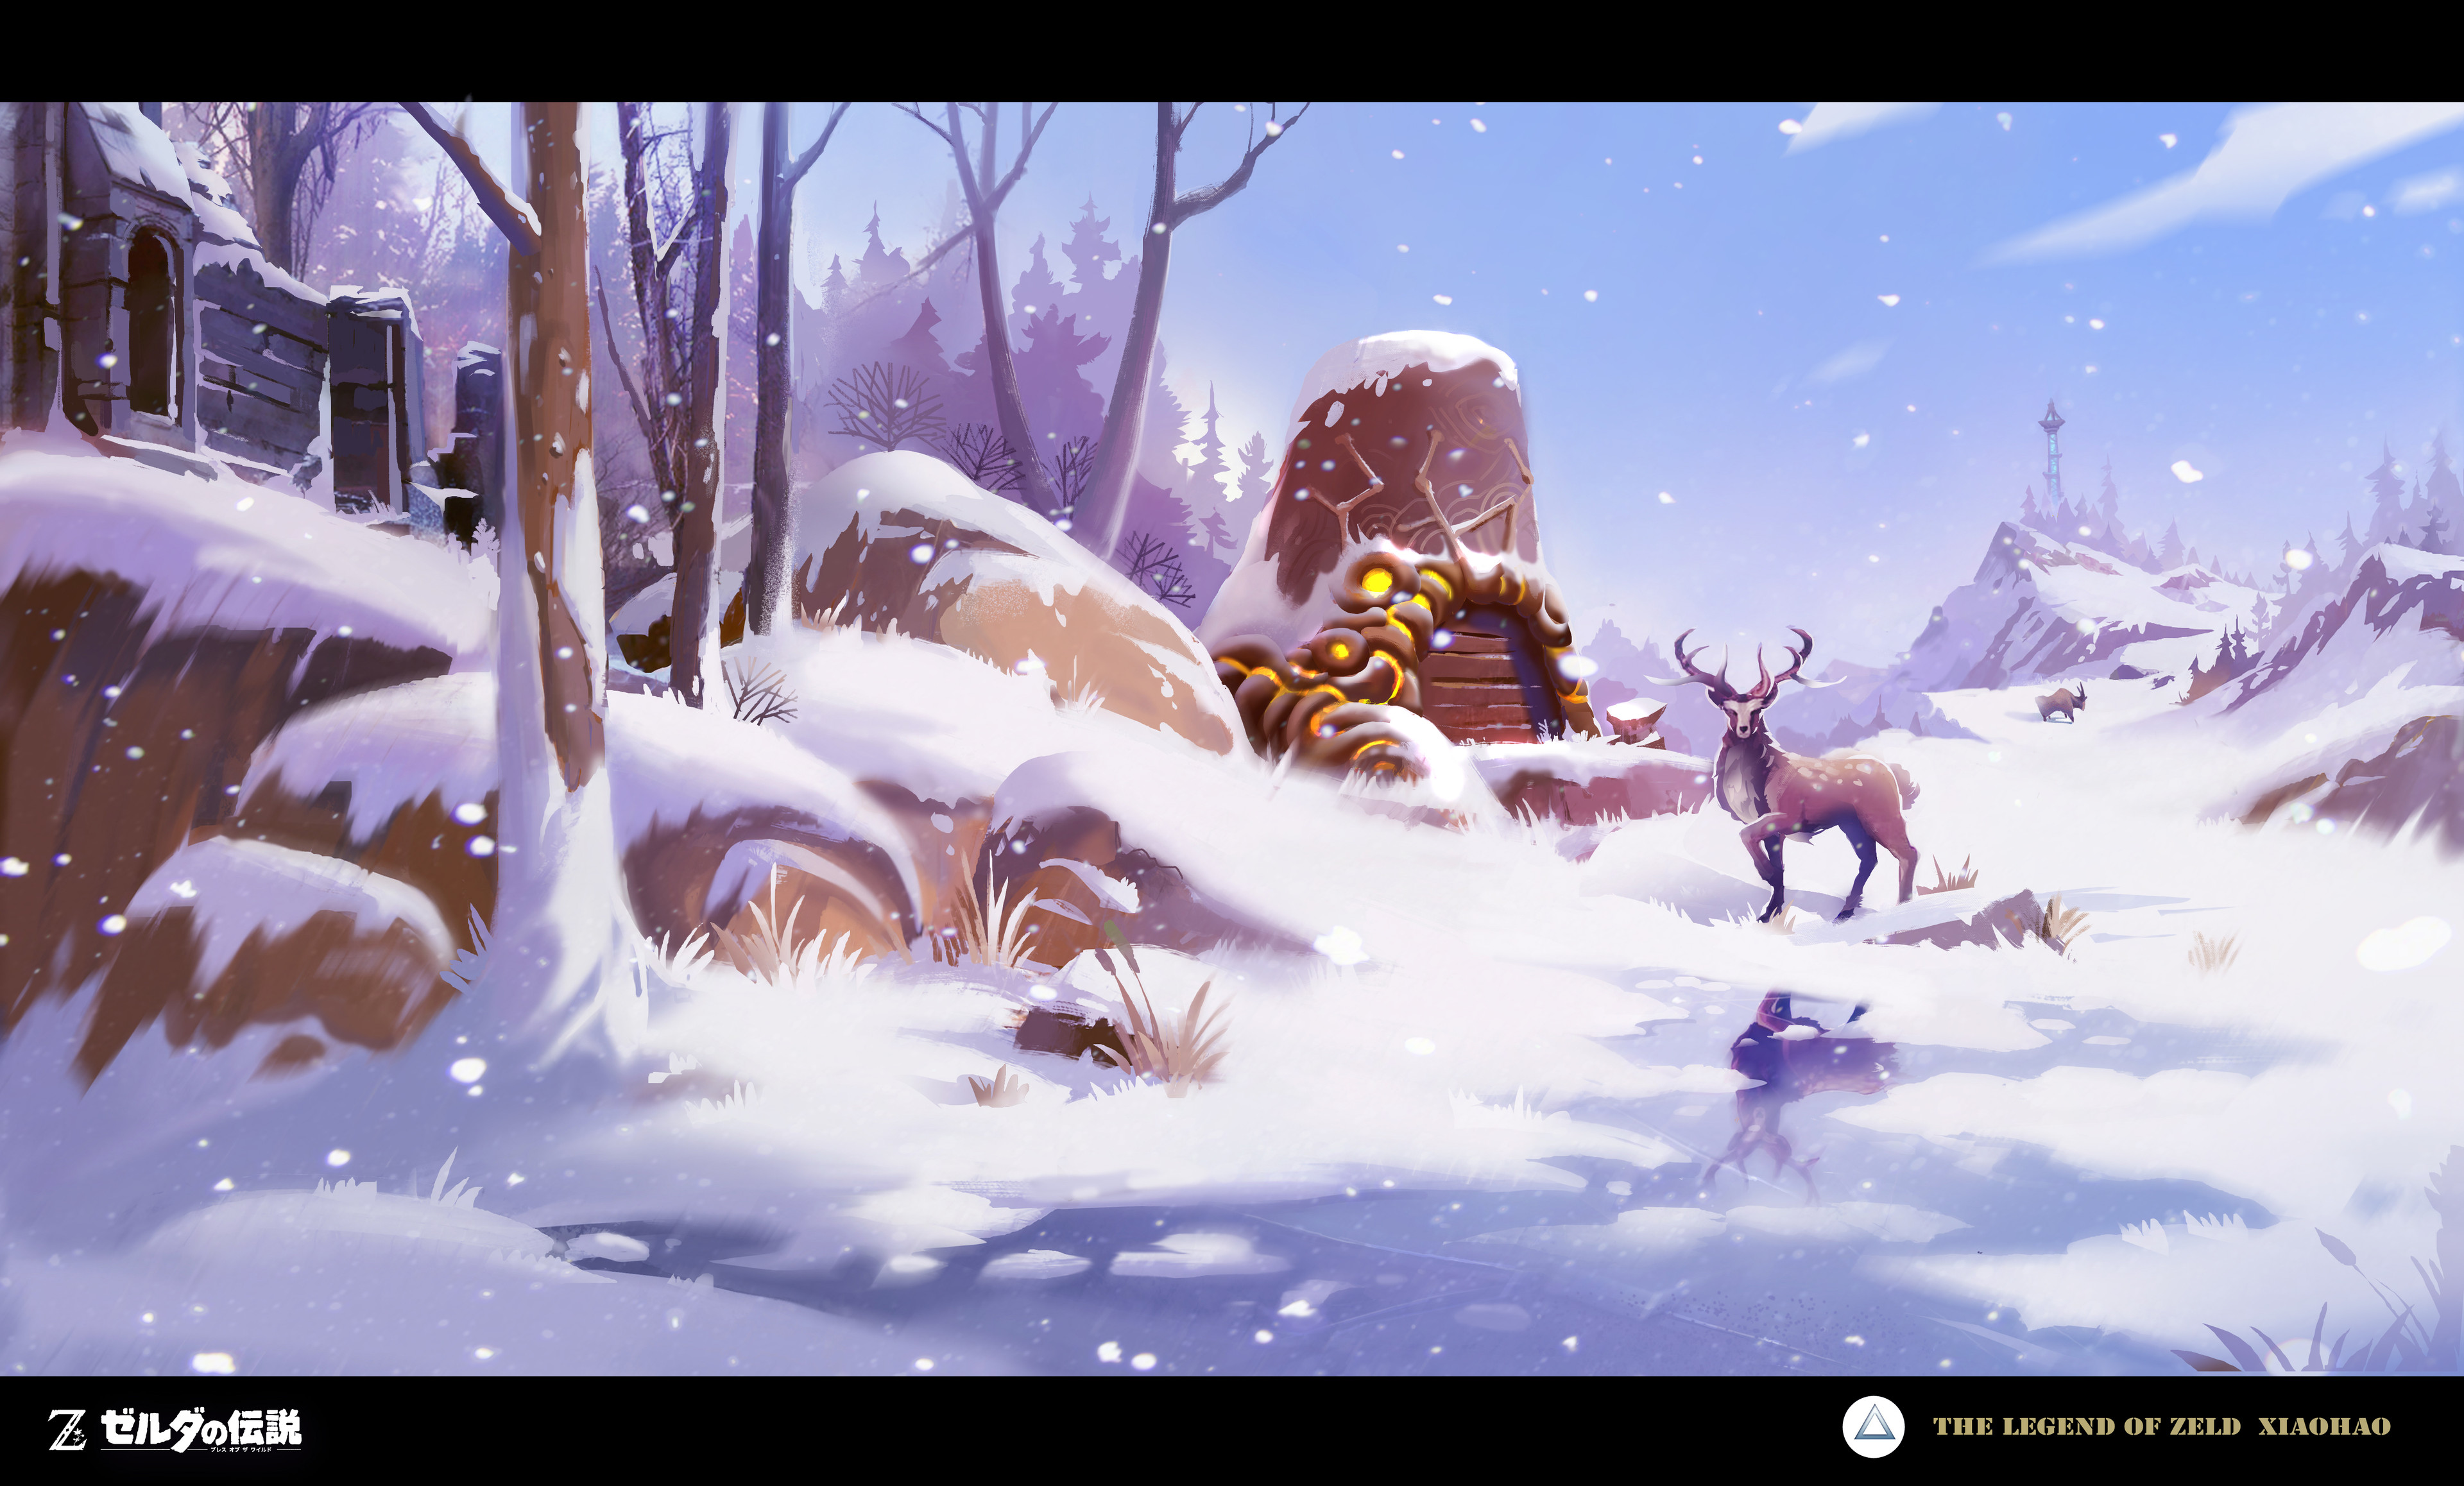 The Legend Of Zelda The Legend Of Zelda Breath Of The Wild Snow Animals Deer Reflection Winter Trees 3840x2316